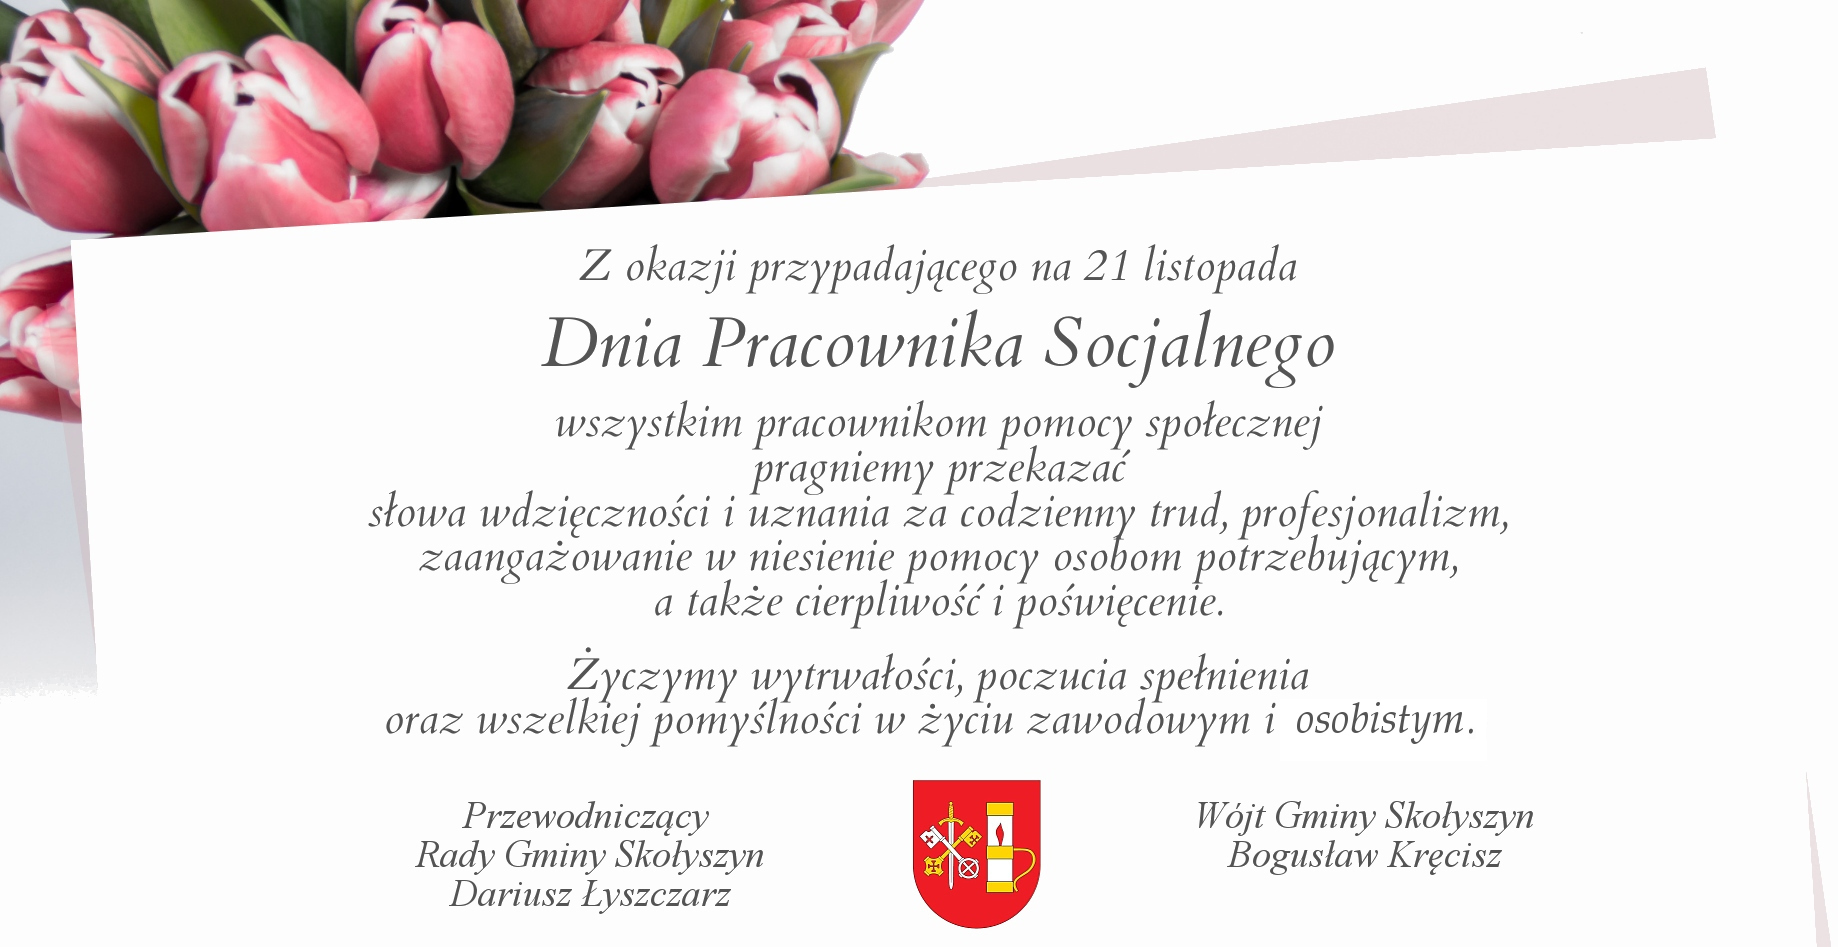 Dzien Pracownika Socjalnego2021a